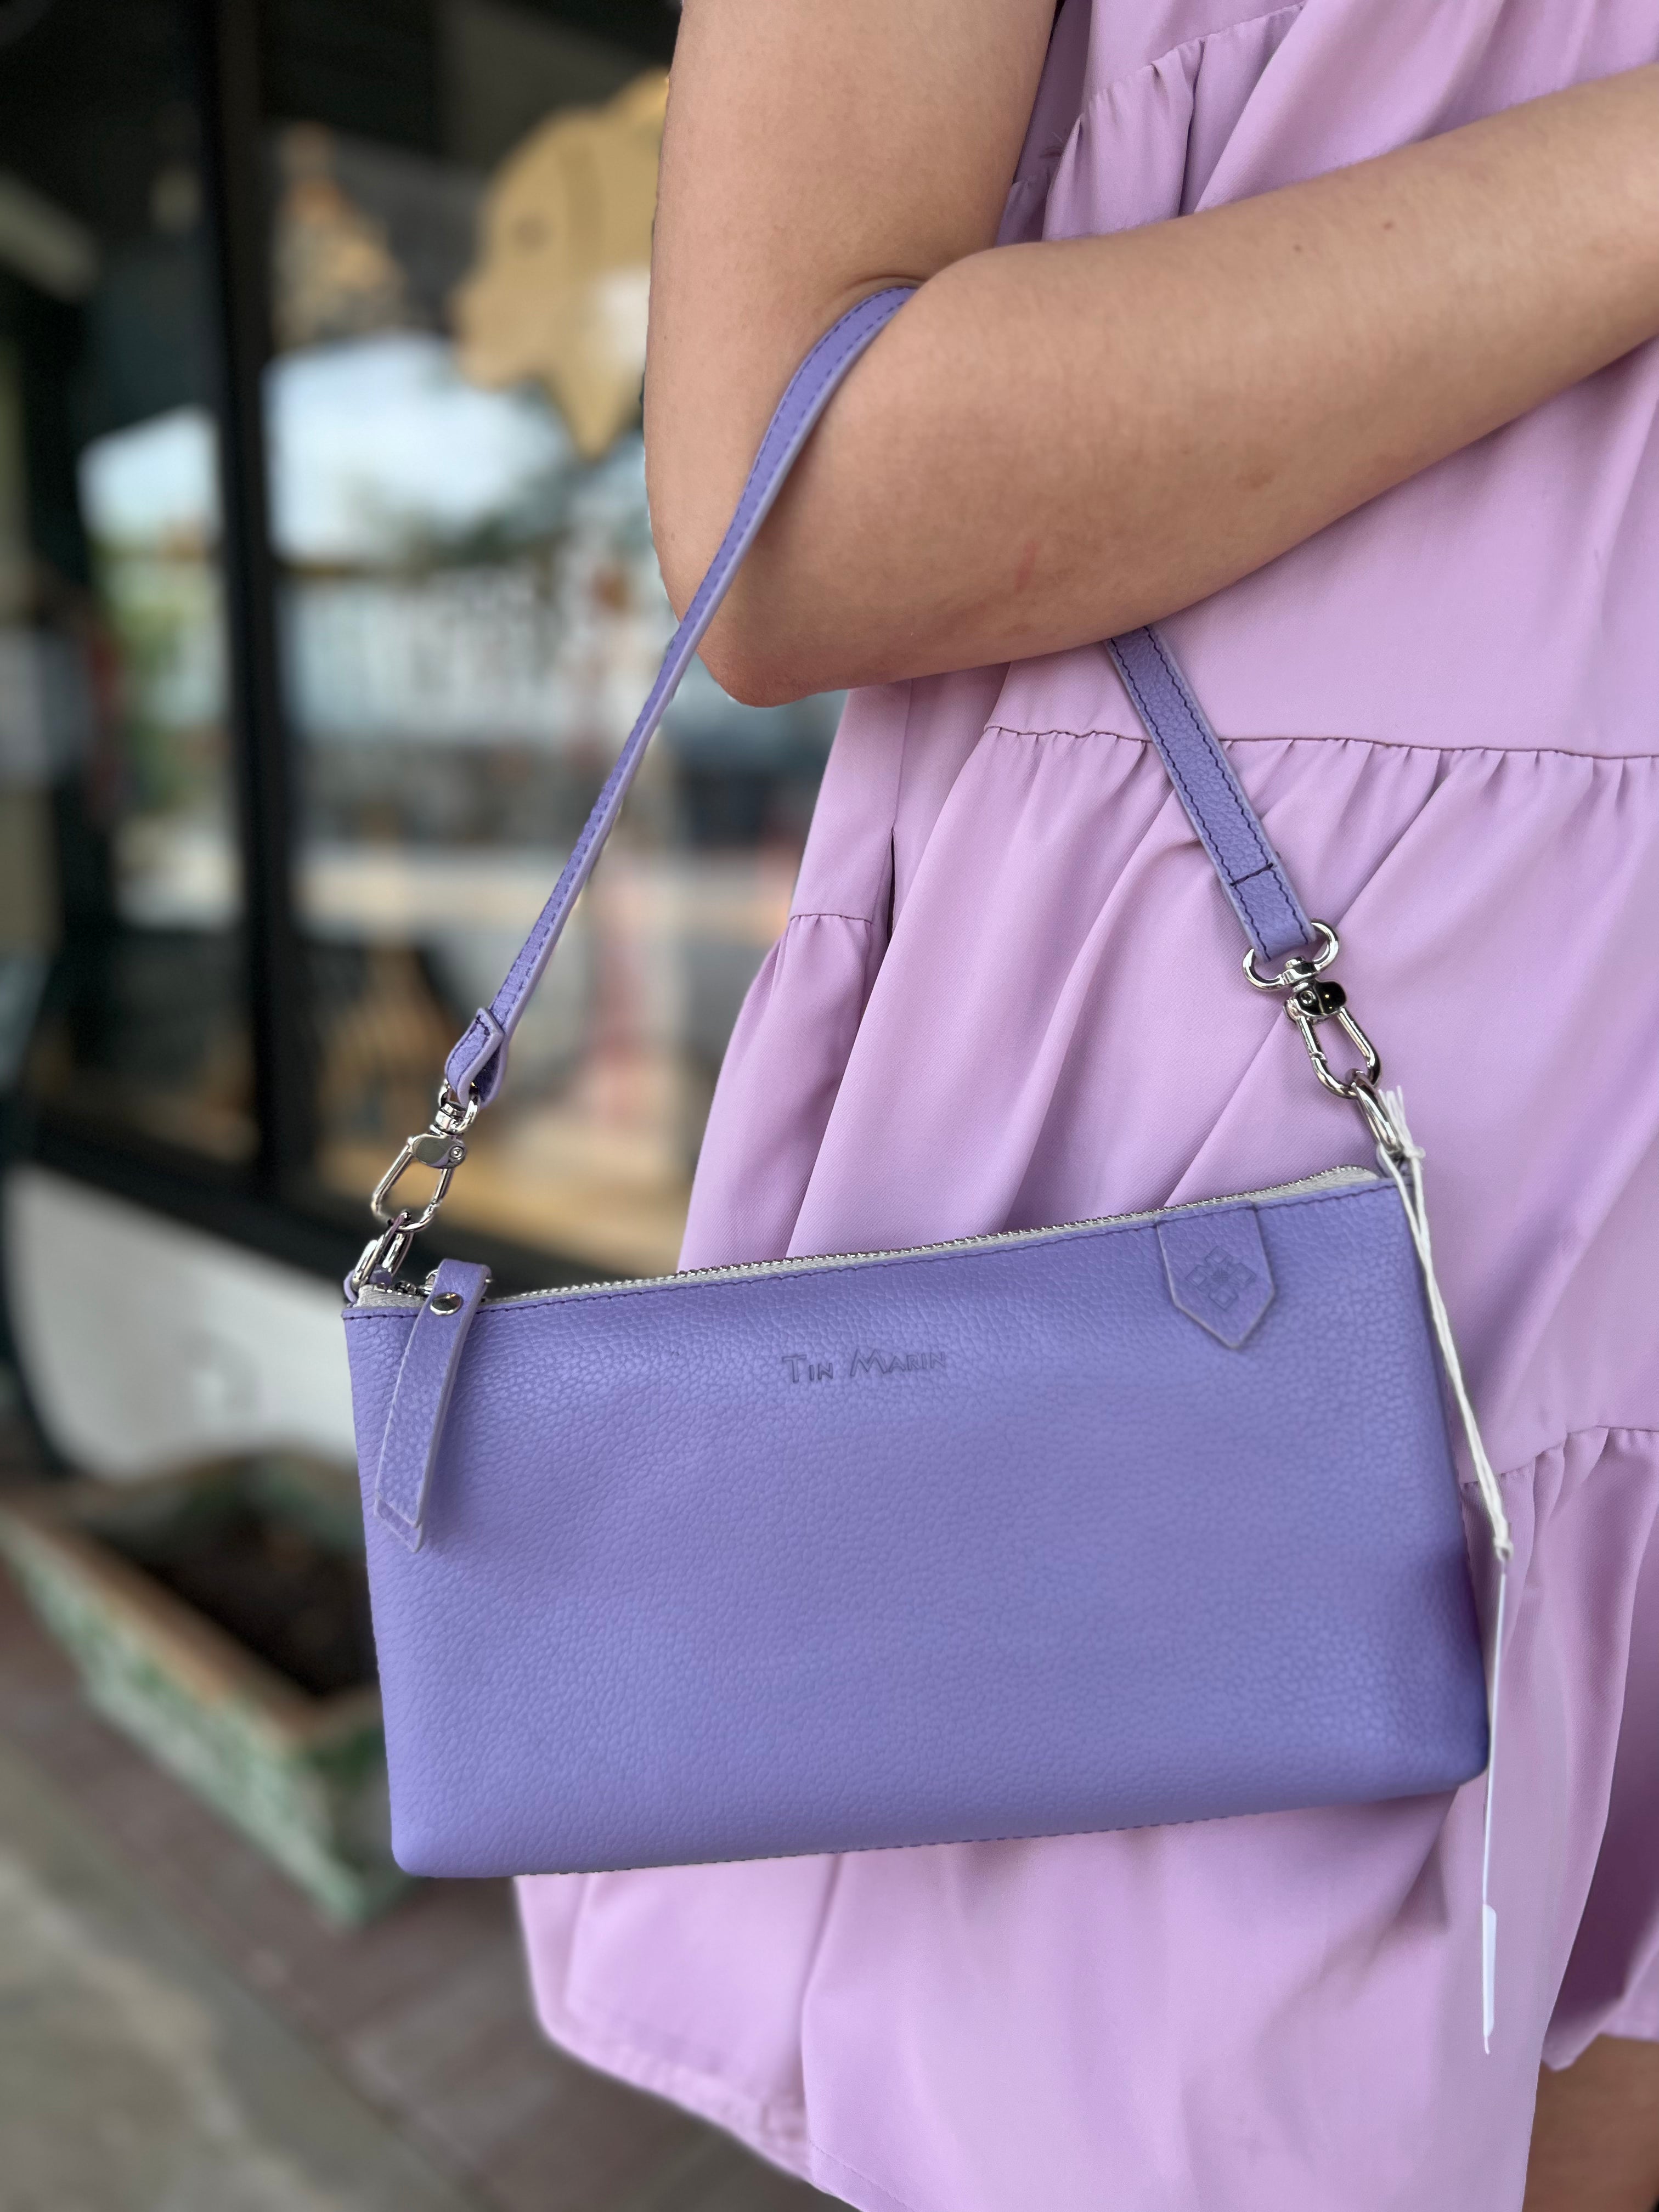 Kate Spade Violet Shoulder Bags for Women